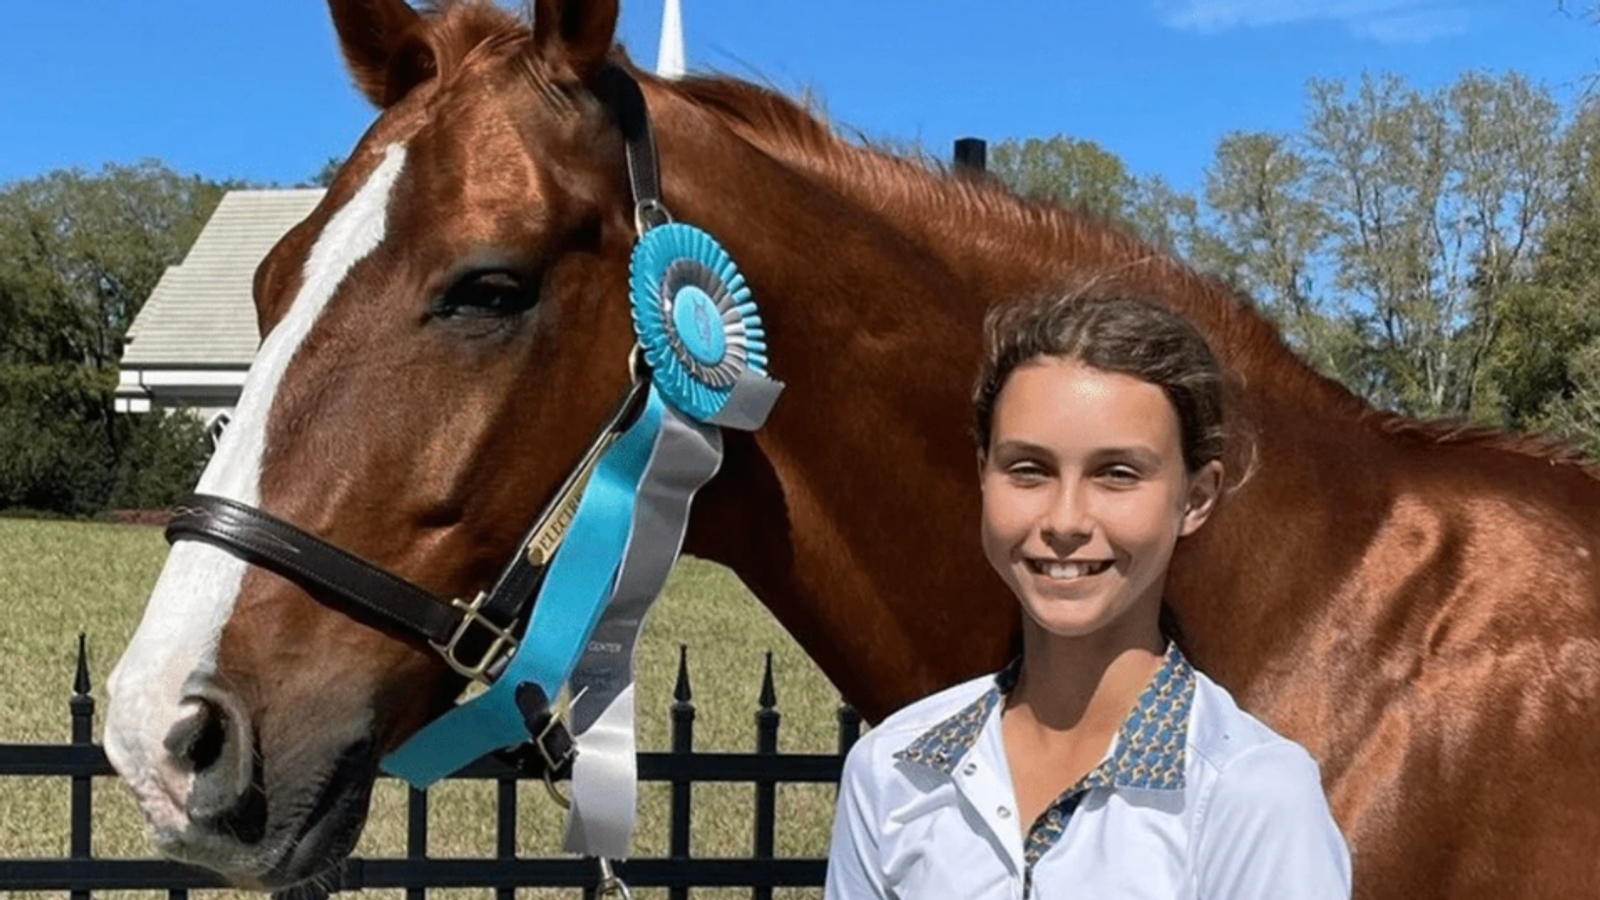 Nastolatka umiera potrącona przez konia podczas zawodów  wiadomości z USA